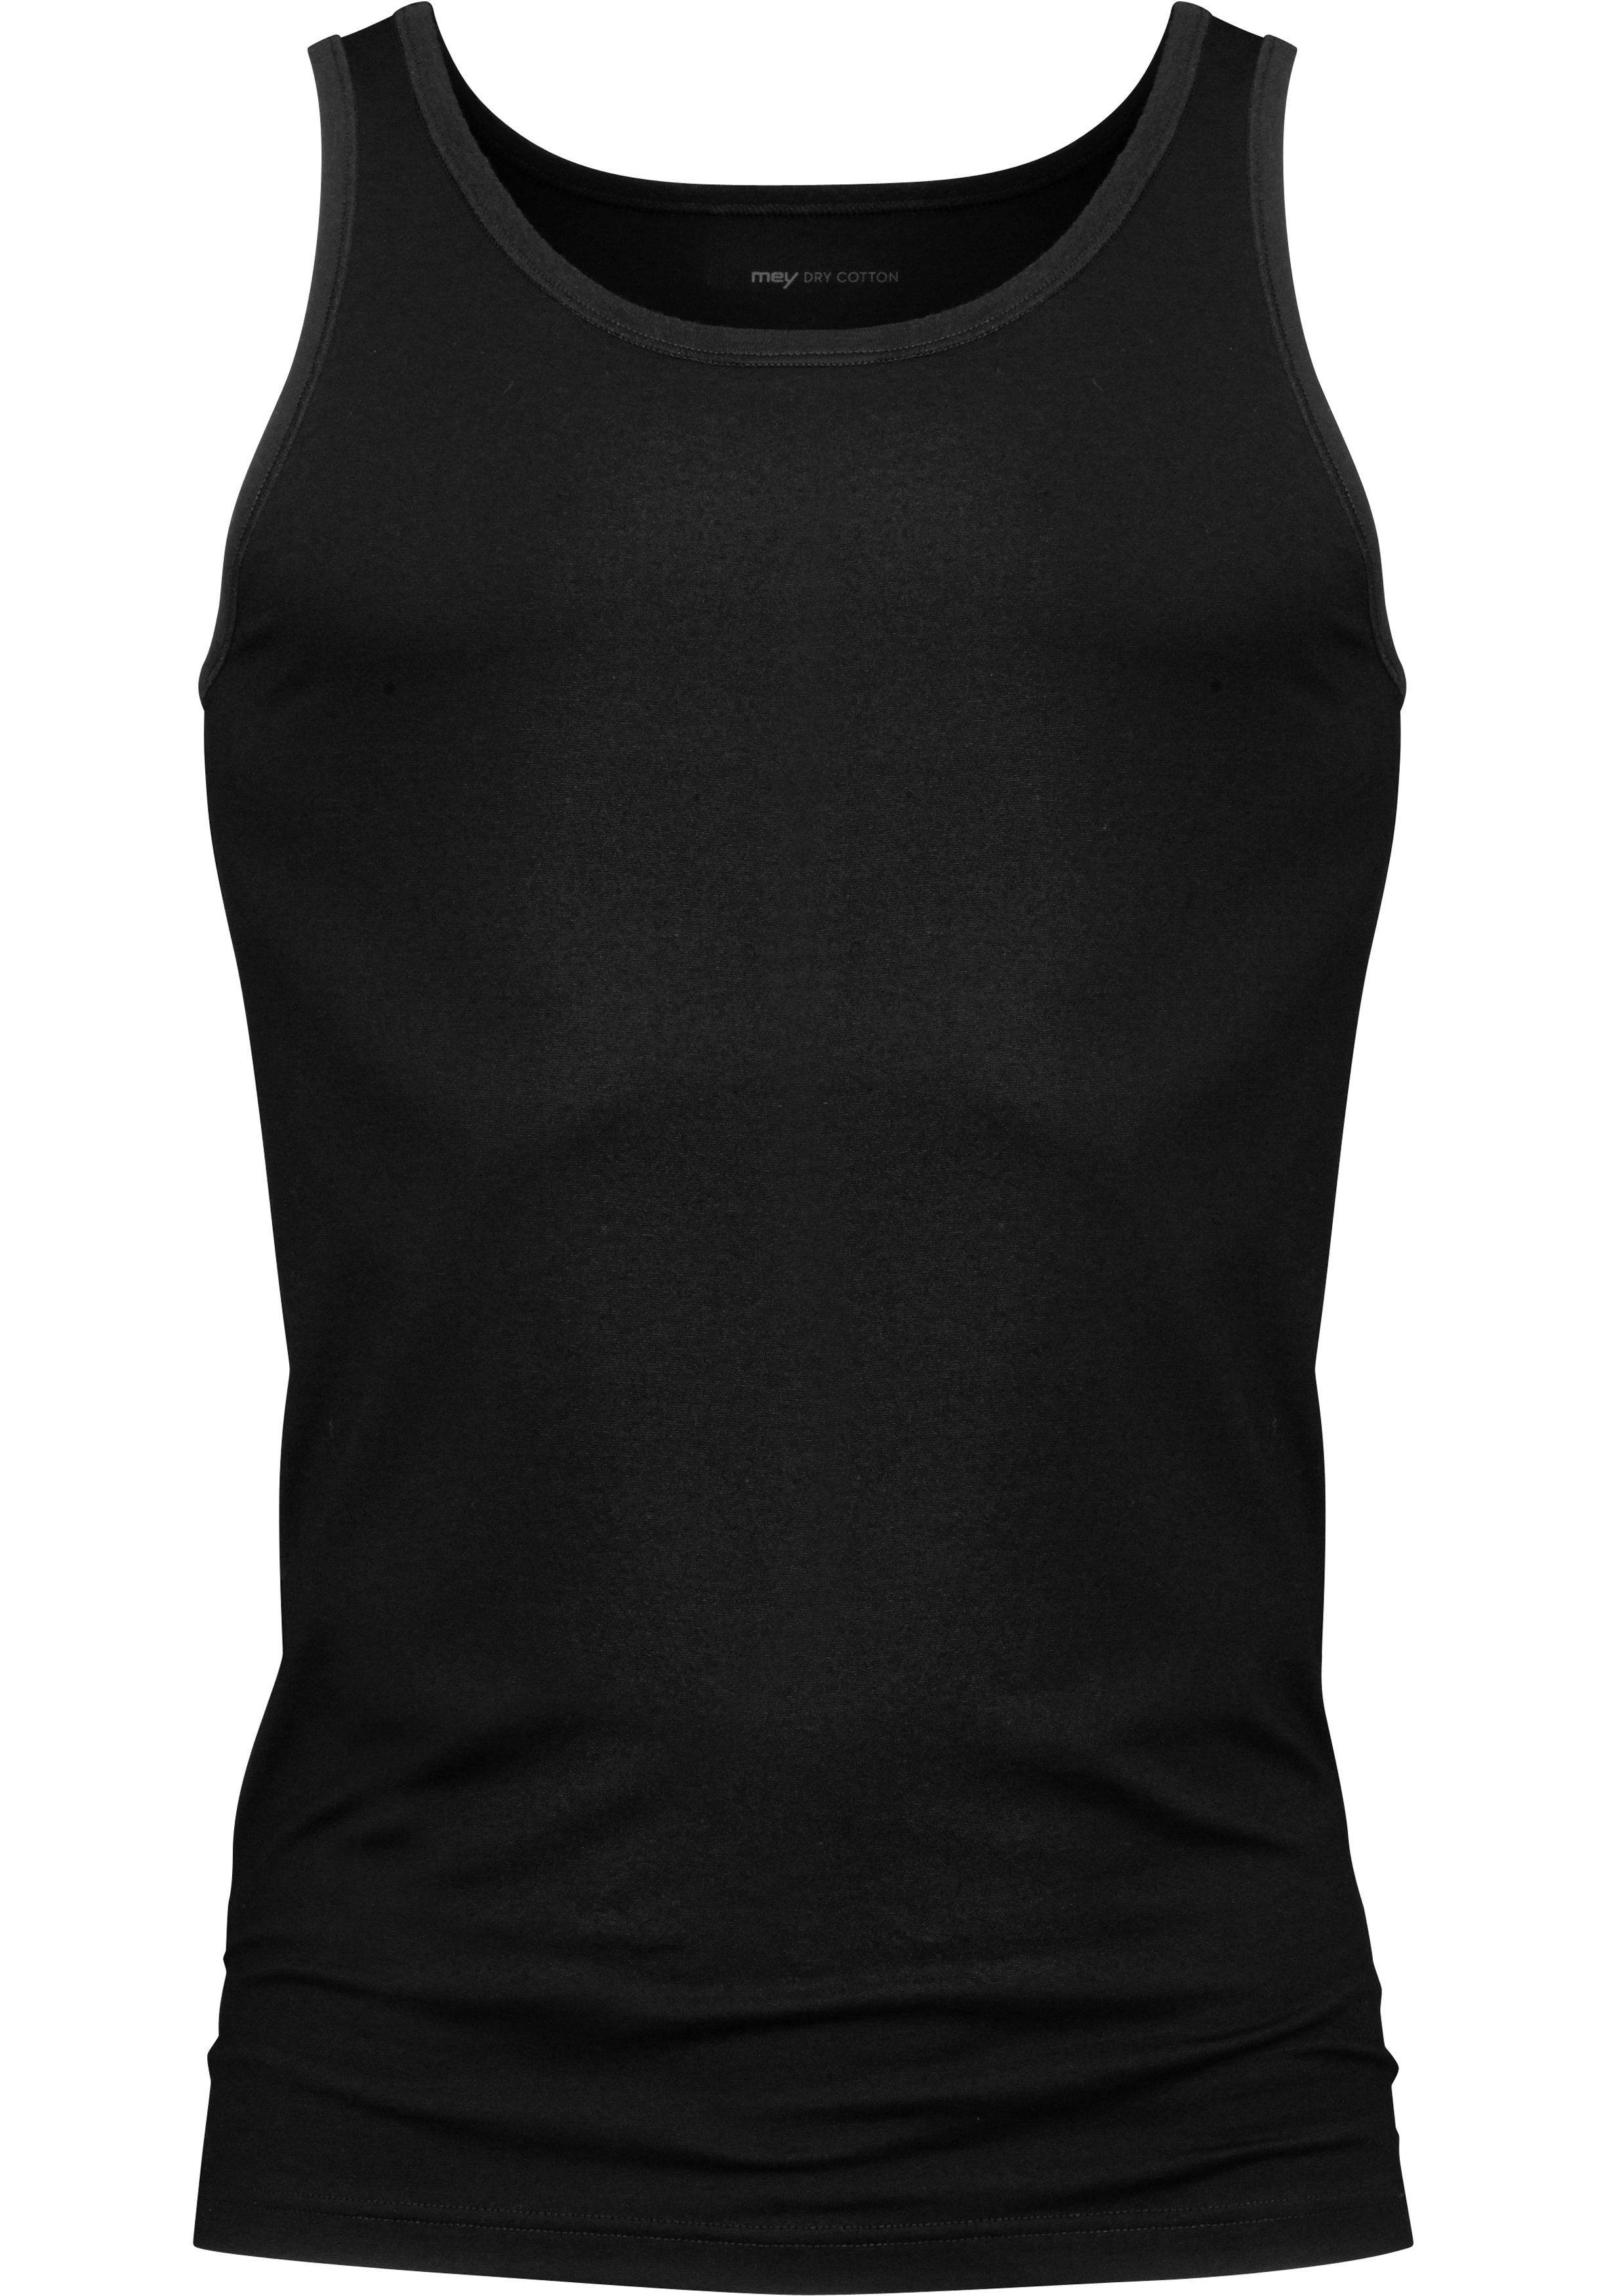 Ooit Voorouder terugbetaling Mey Dry Cotton athletic shirt (1-pack), heren singlet, zwart - Shop de  nieuwste voorjaarsmode